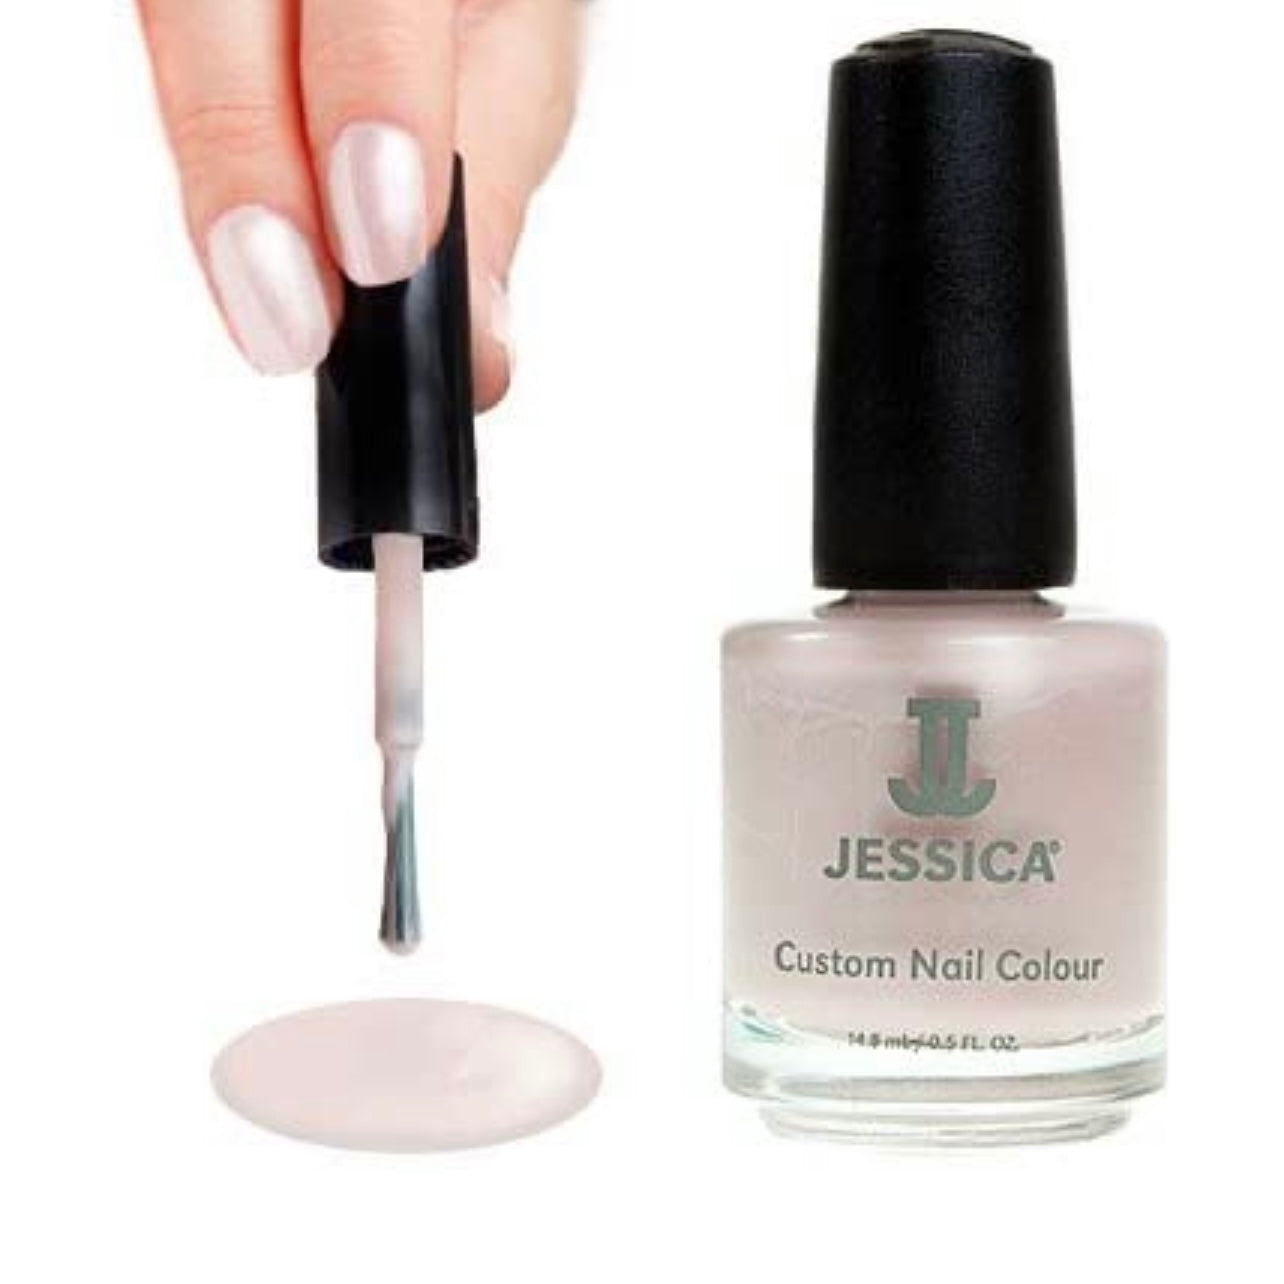 Jessica Custom Vegan Nail Color In 392 Sorbet